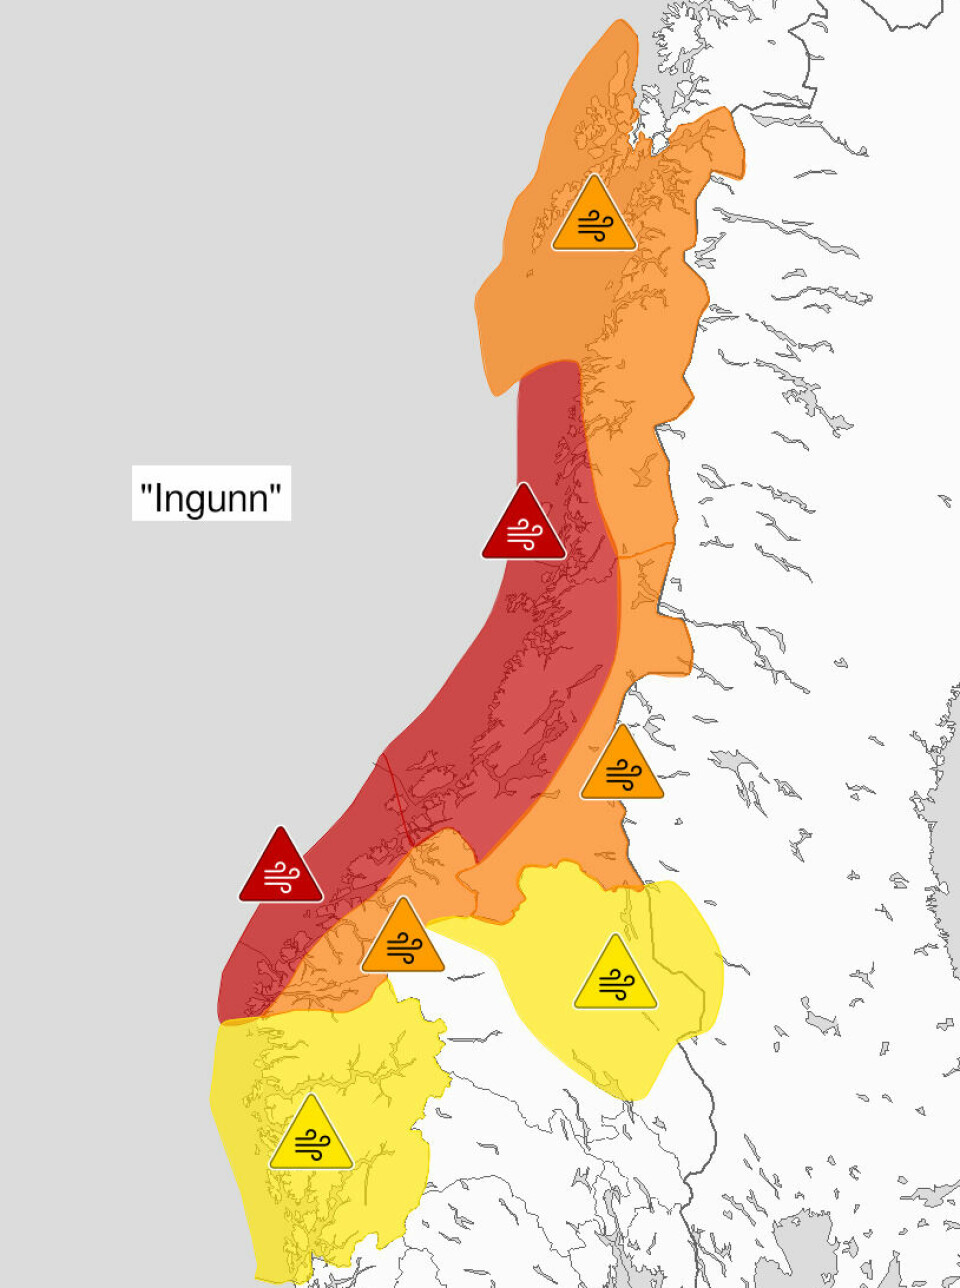 Et kart over Norge med farevarsel markert